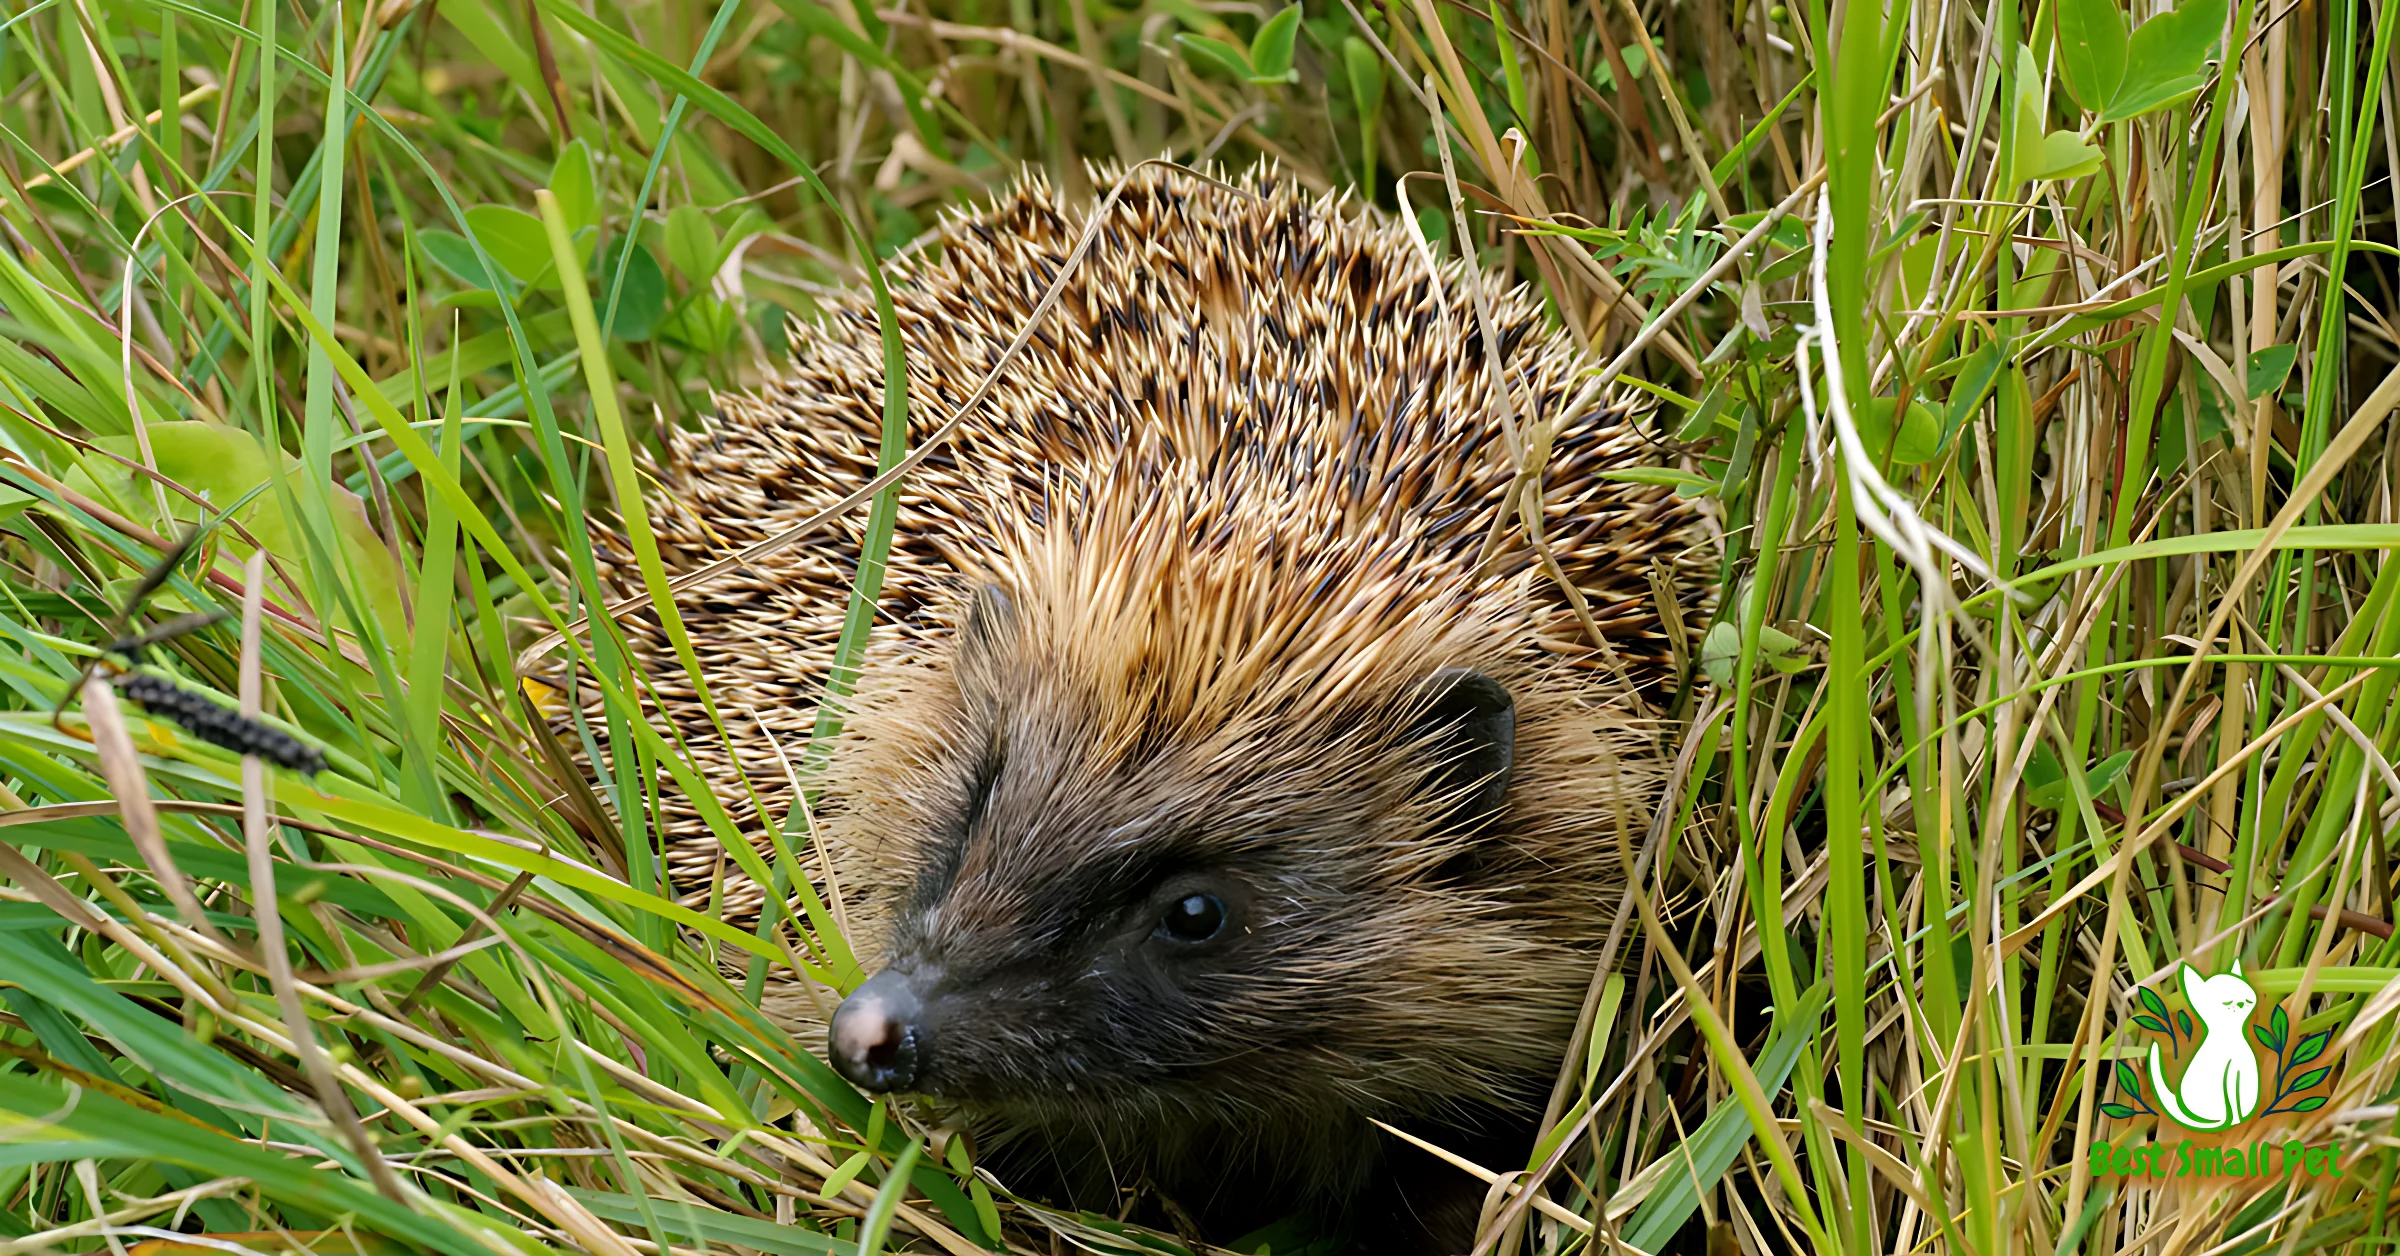 Where Do Hedgehogs Live? Their Natural Habitats and Behaviors